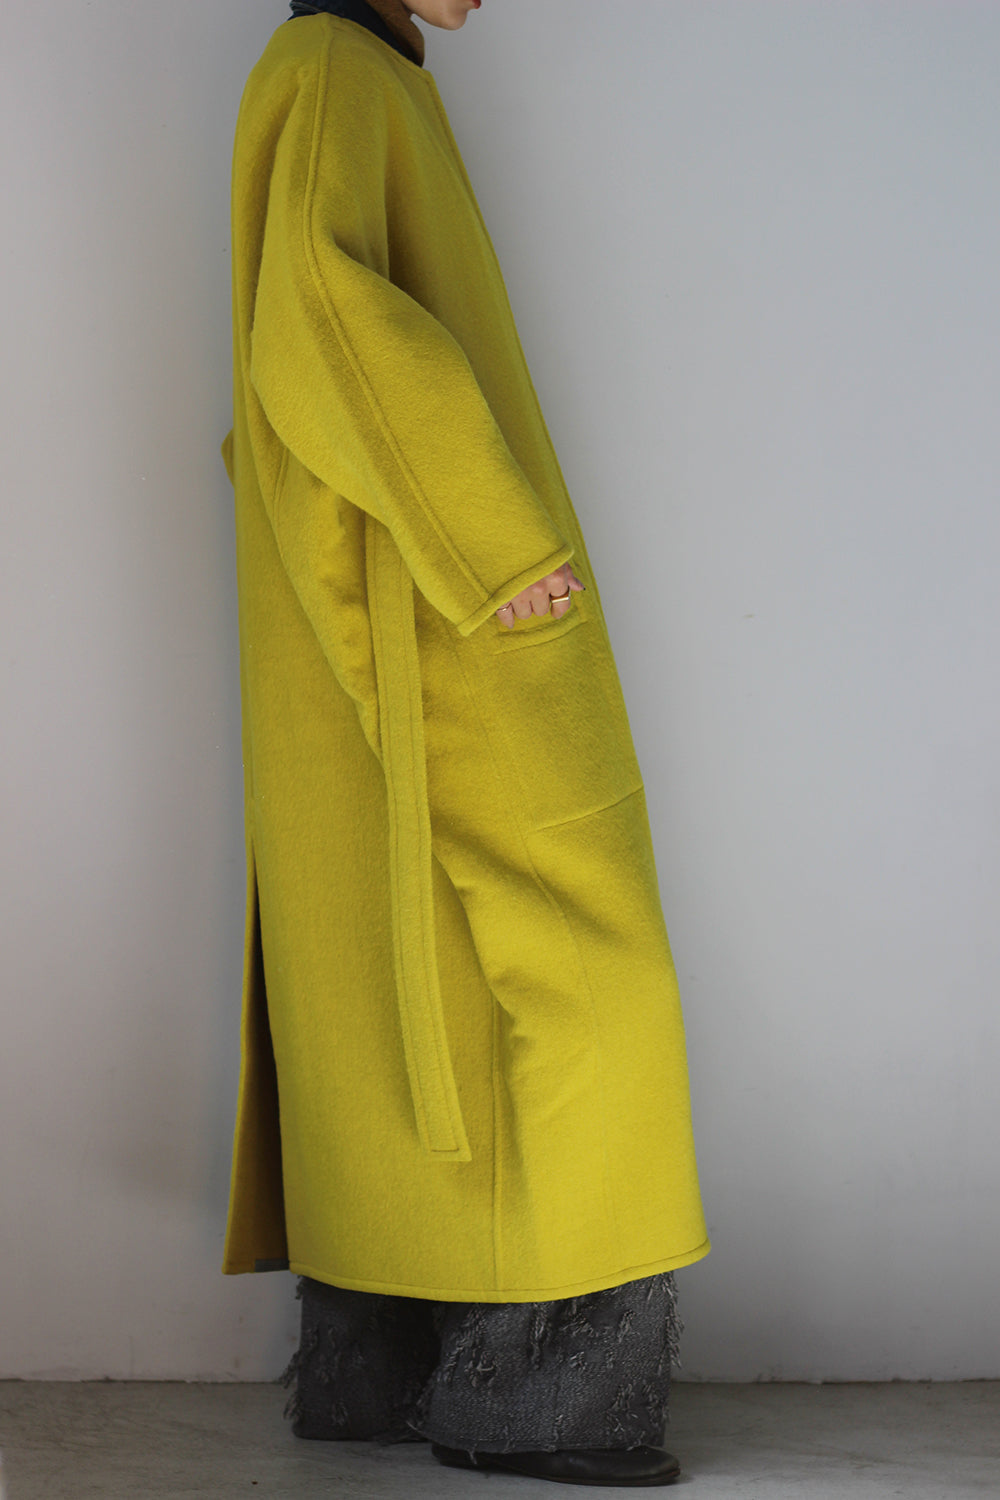 JUN MIKAMI "reversible coat" (yellow)